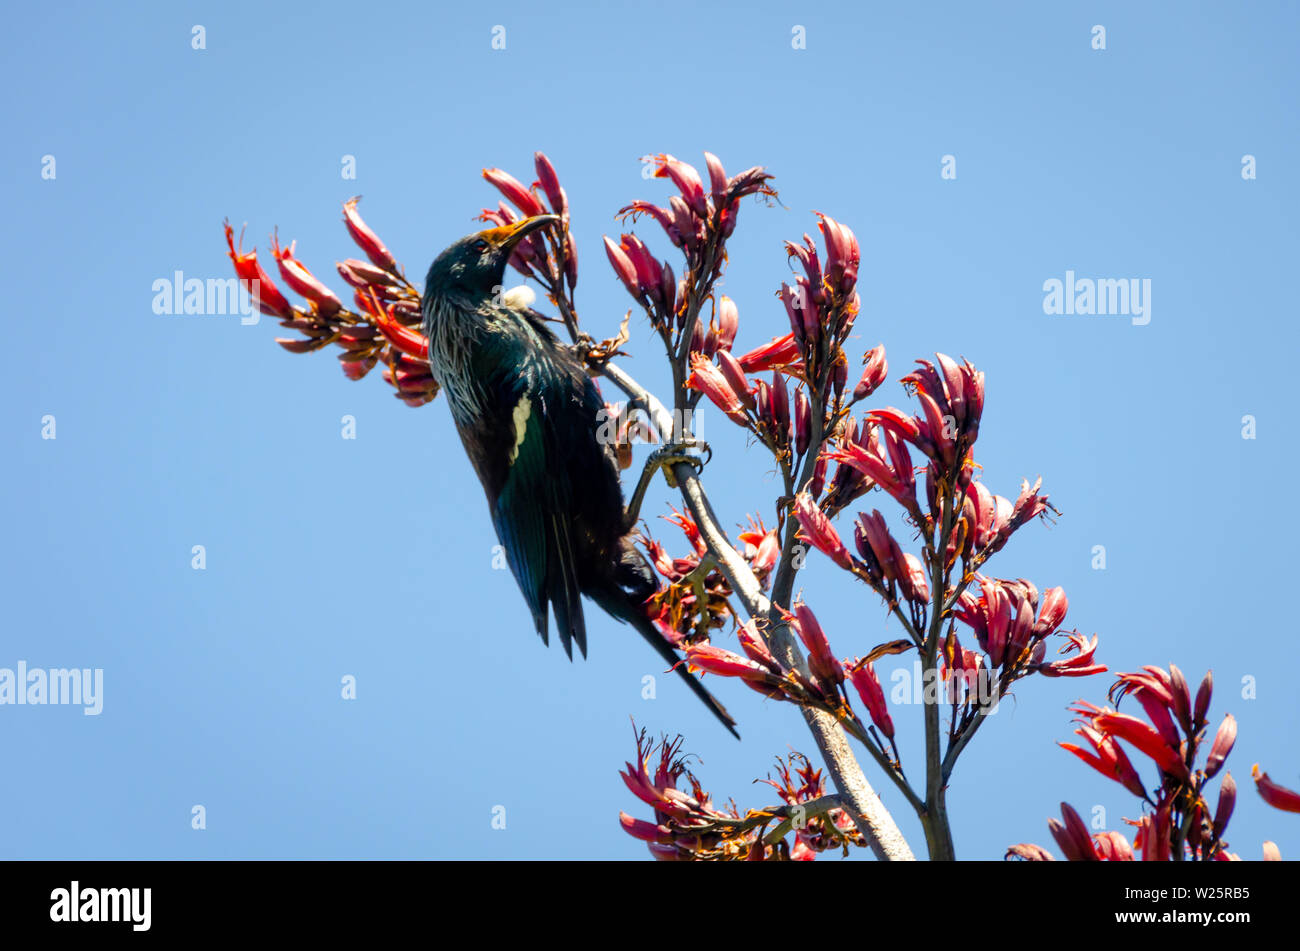 Tui nourrir les oiseaux sur lin rouge fleurs, l'île de Kapiti, île du Nord, Nouvelle-Zélande, note le pollen rouge sur la face de la TUI. Banque D'Images